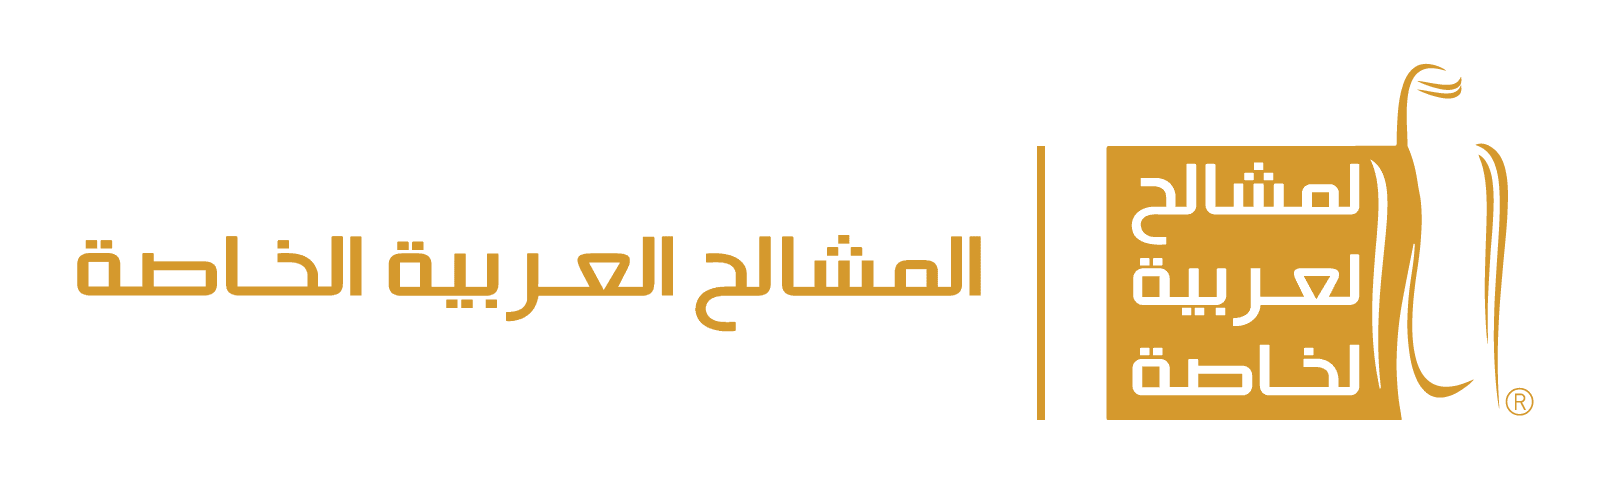 أكواد خصم و عروض mshalh | المشالح العربية الخاصة